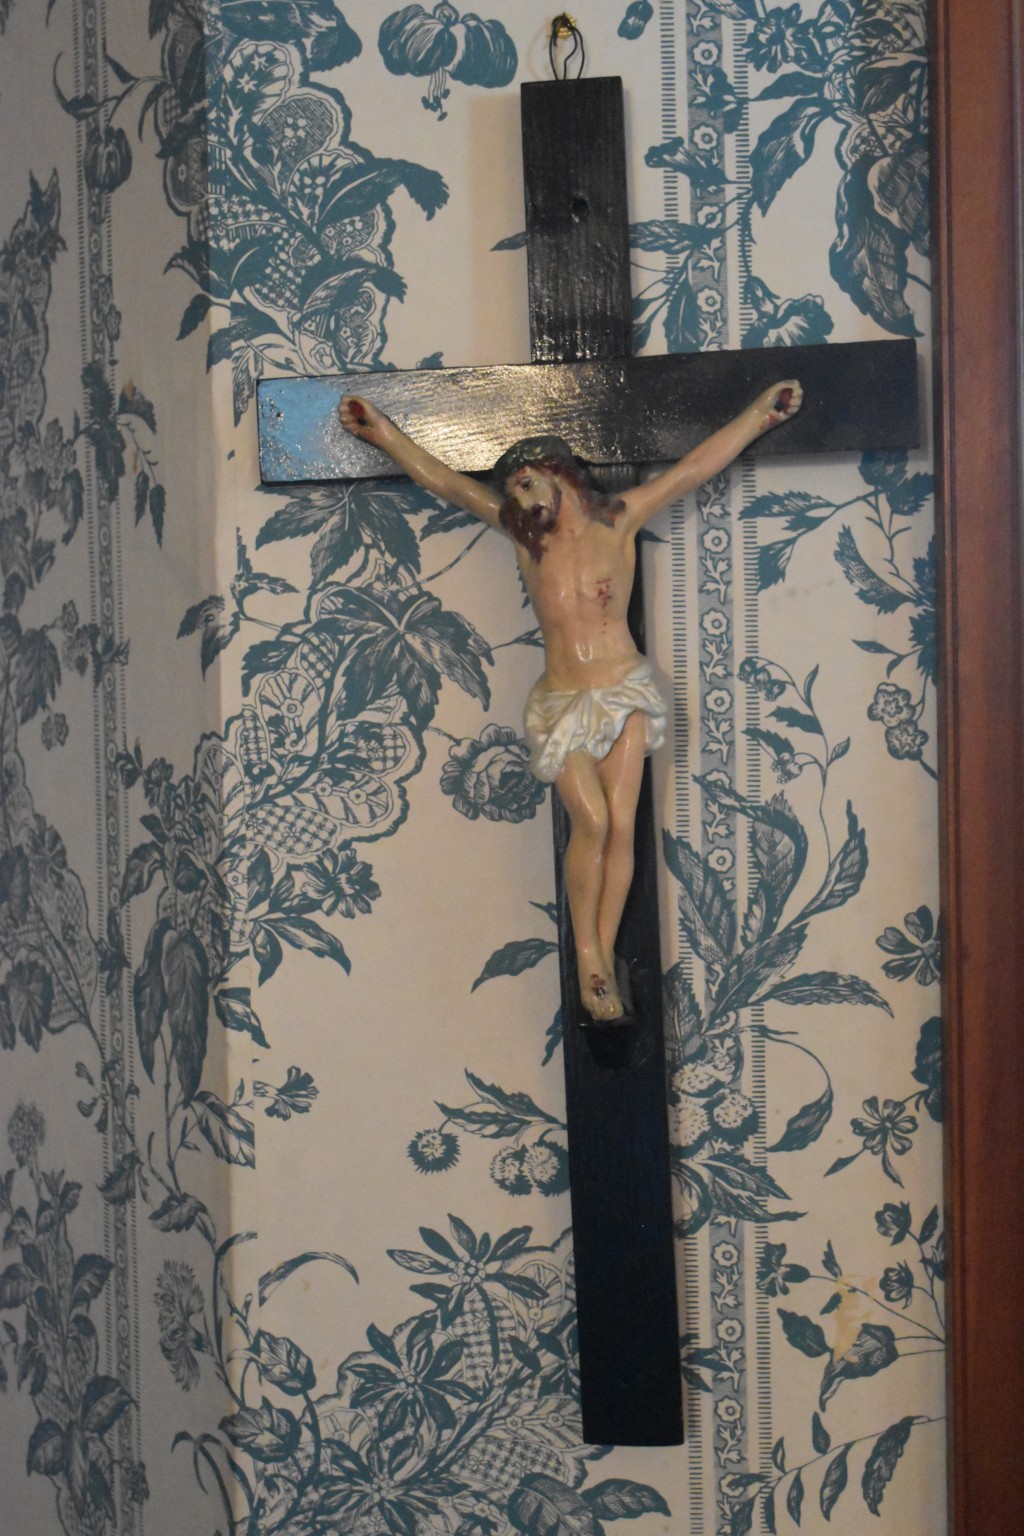 Catholic art, crucifix